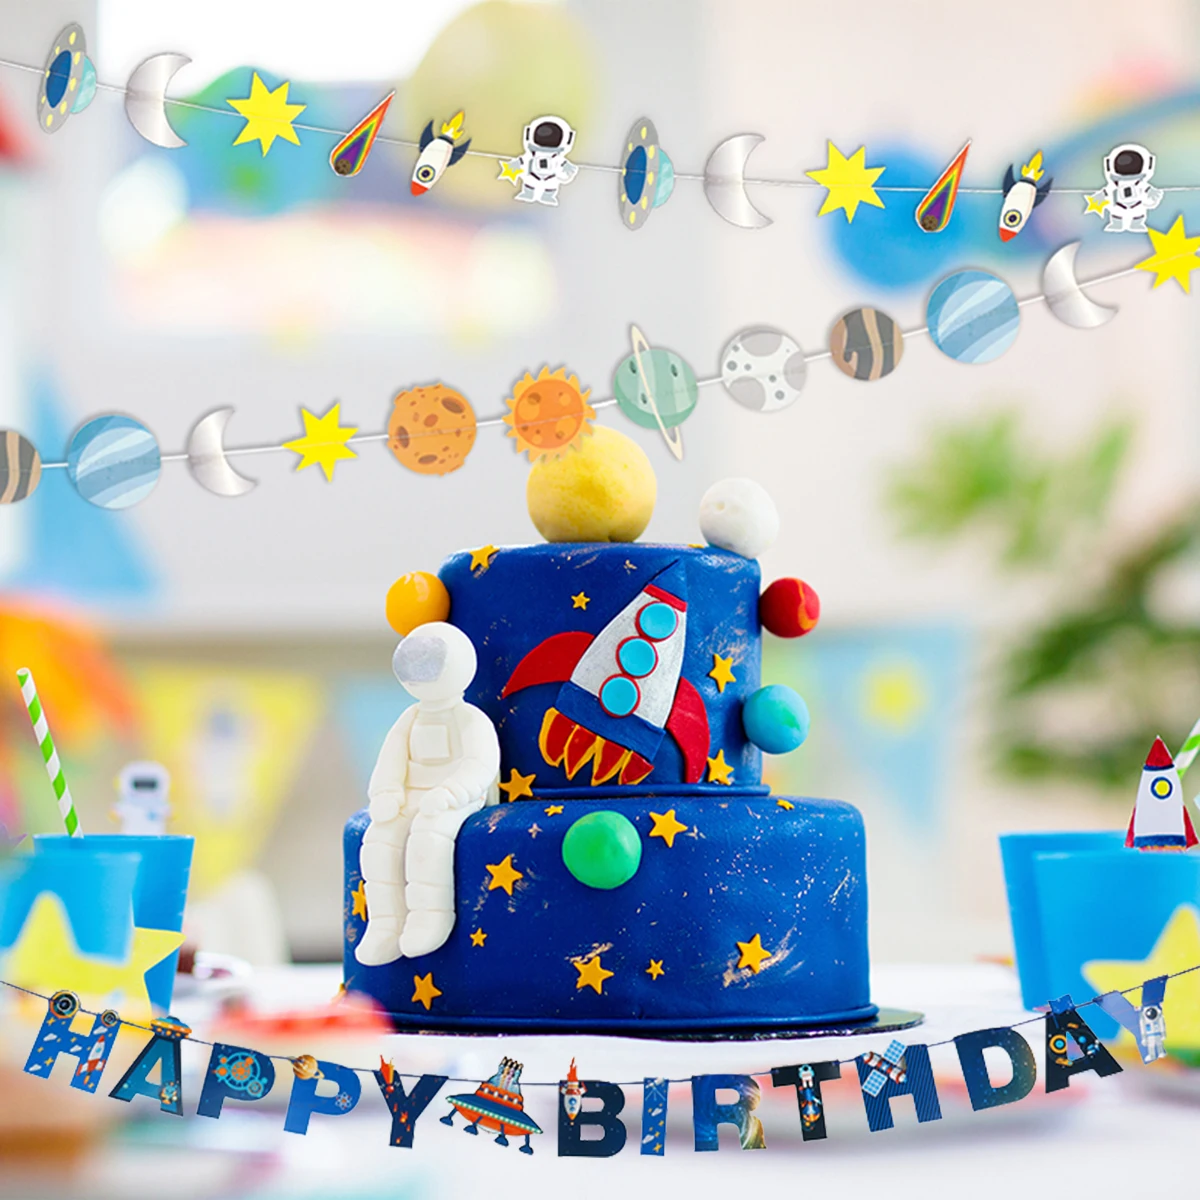 

Висячие украшения на солнечной батарее, баннер, гирлянда на день рождения с космосом, украшение для тематической вечеринки в виде астронавта, галактики, детская вечеринка в честь Дня рождения мальчика